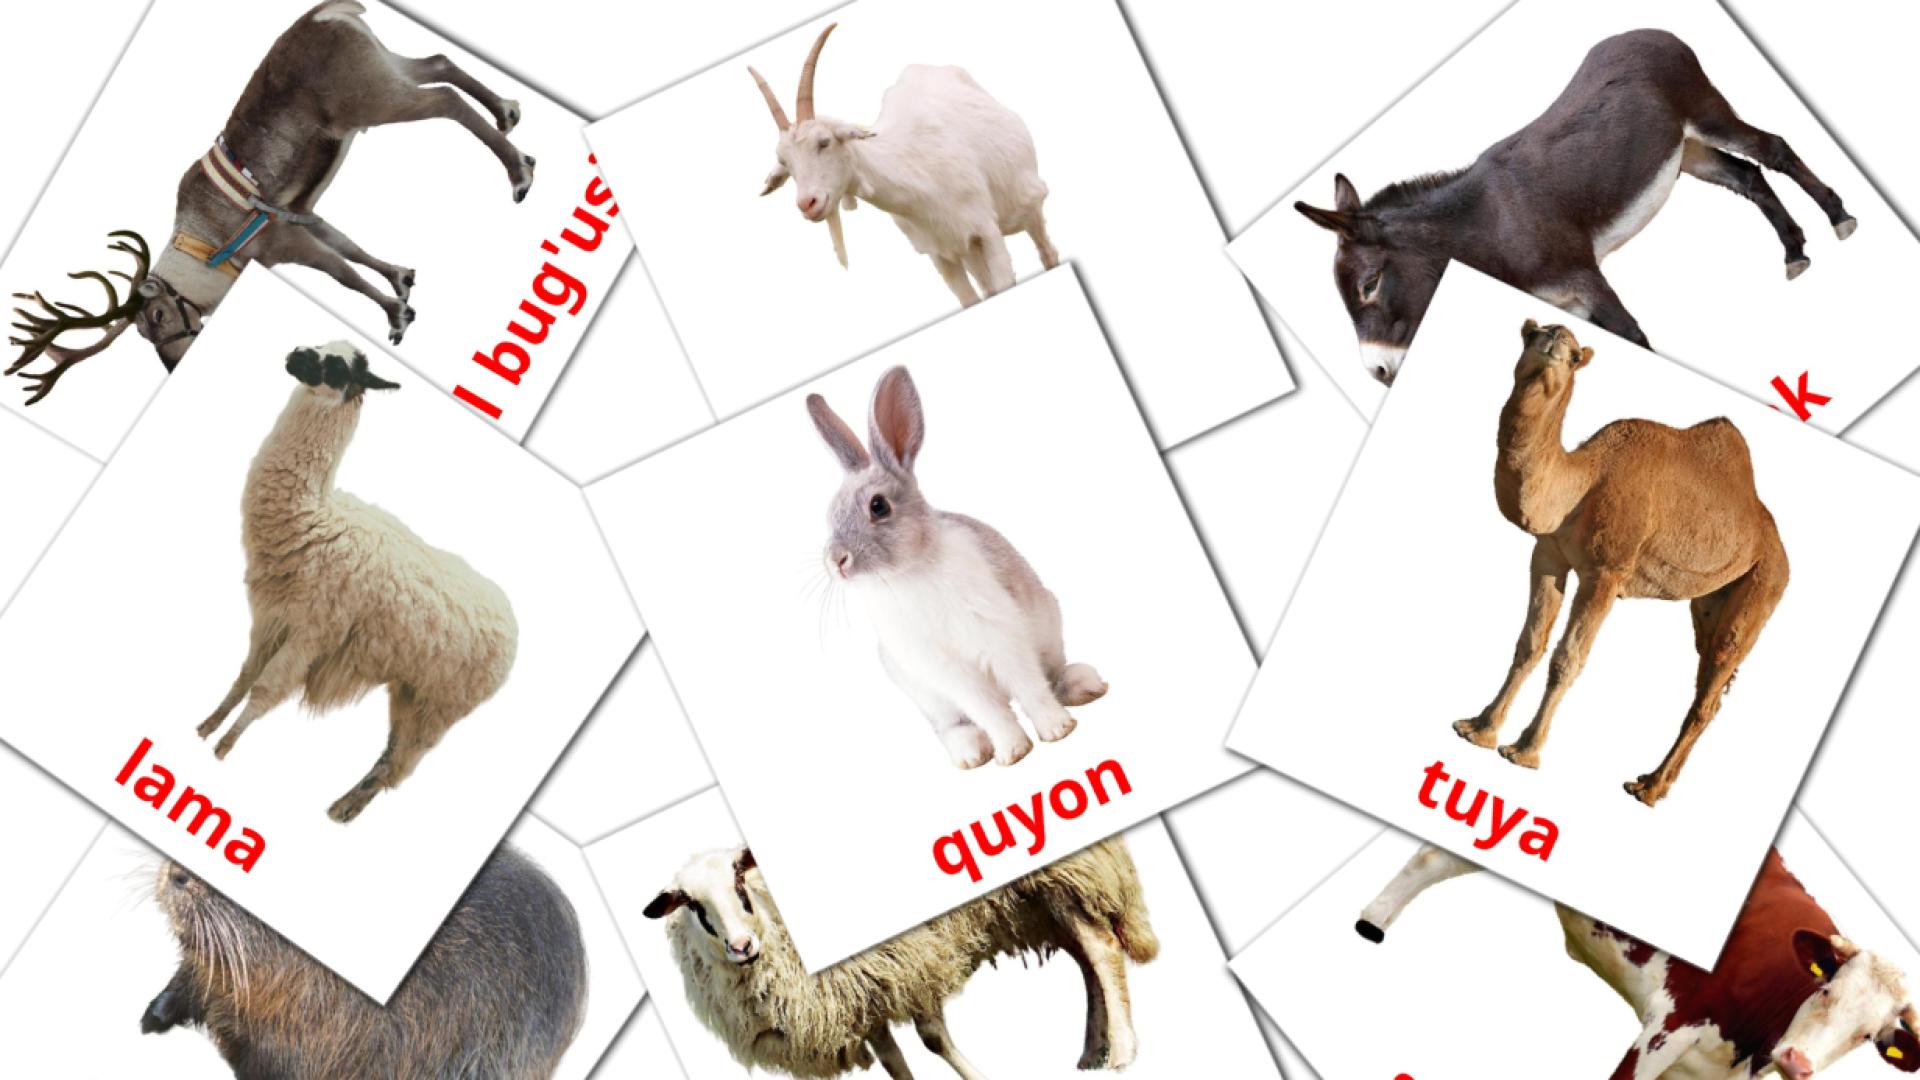 Bildkarten für Ferma hayvonlari